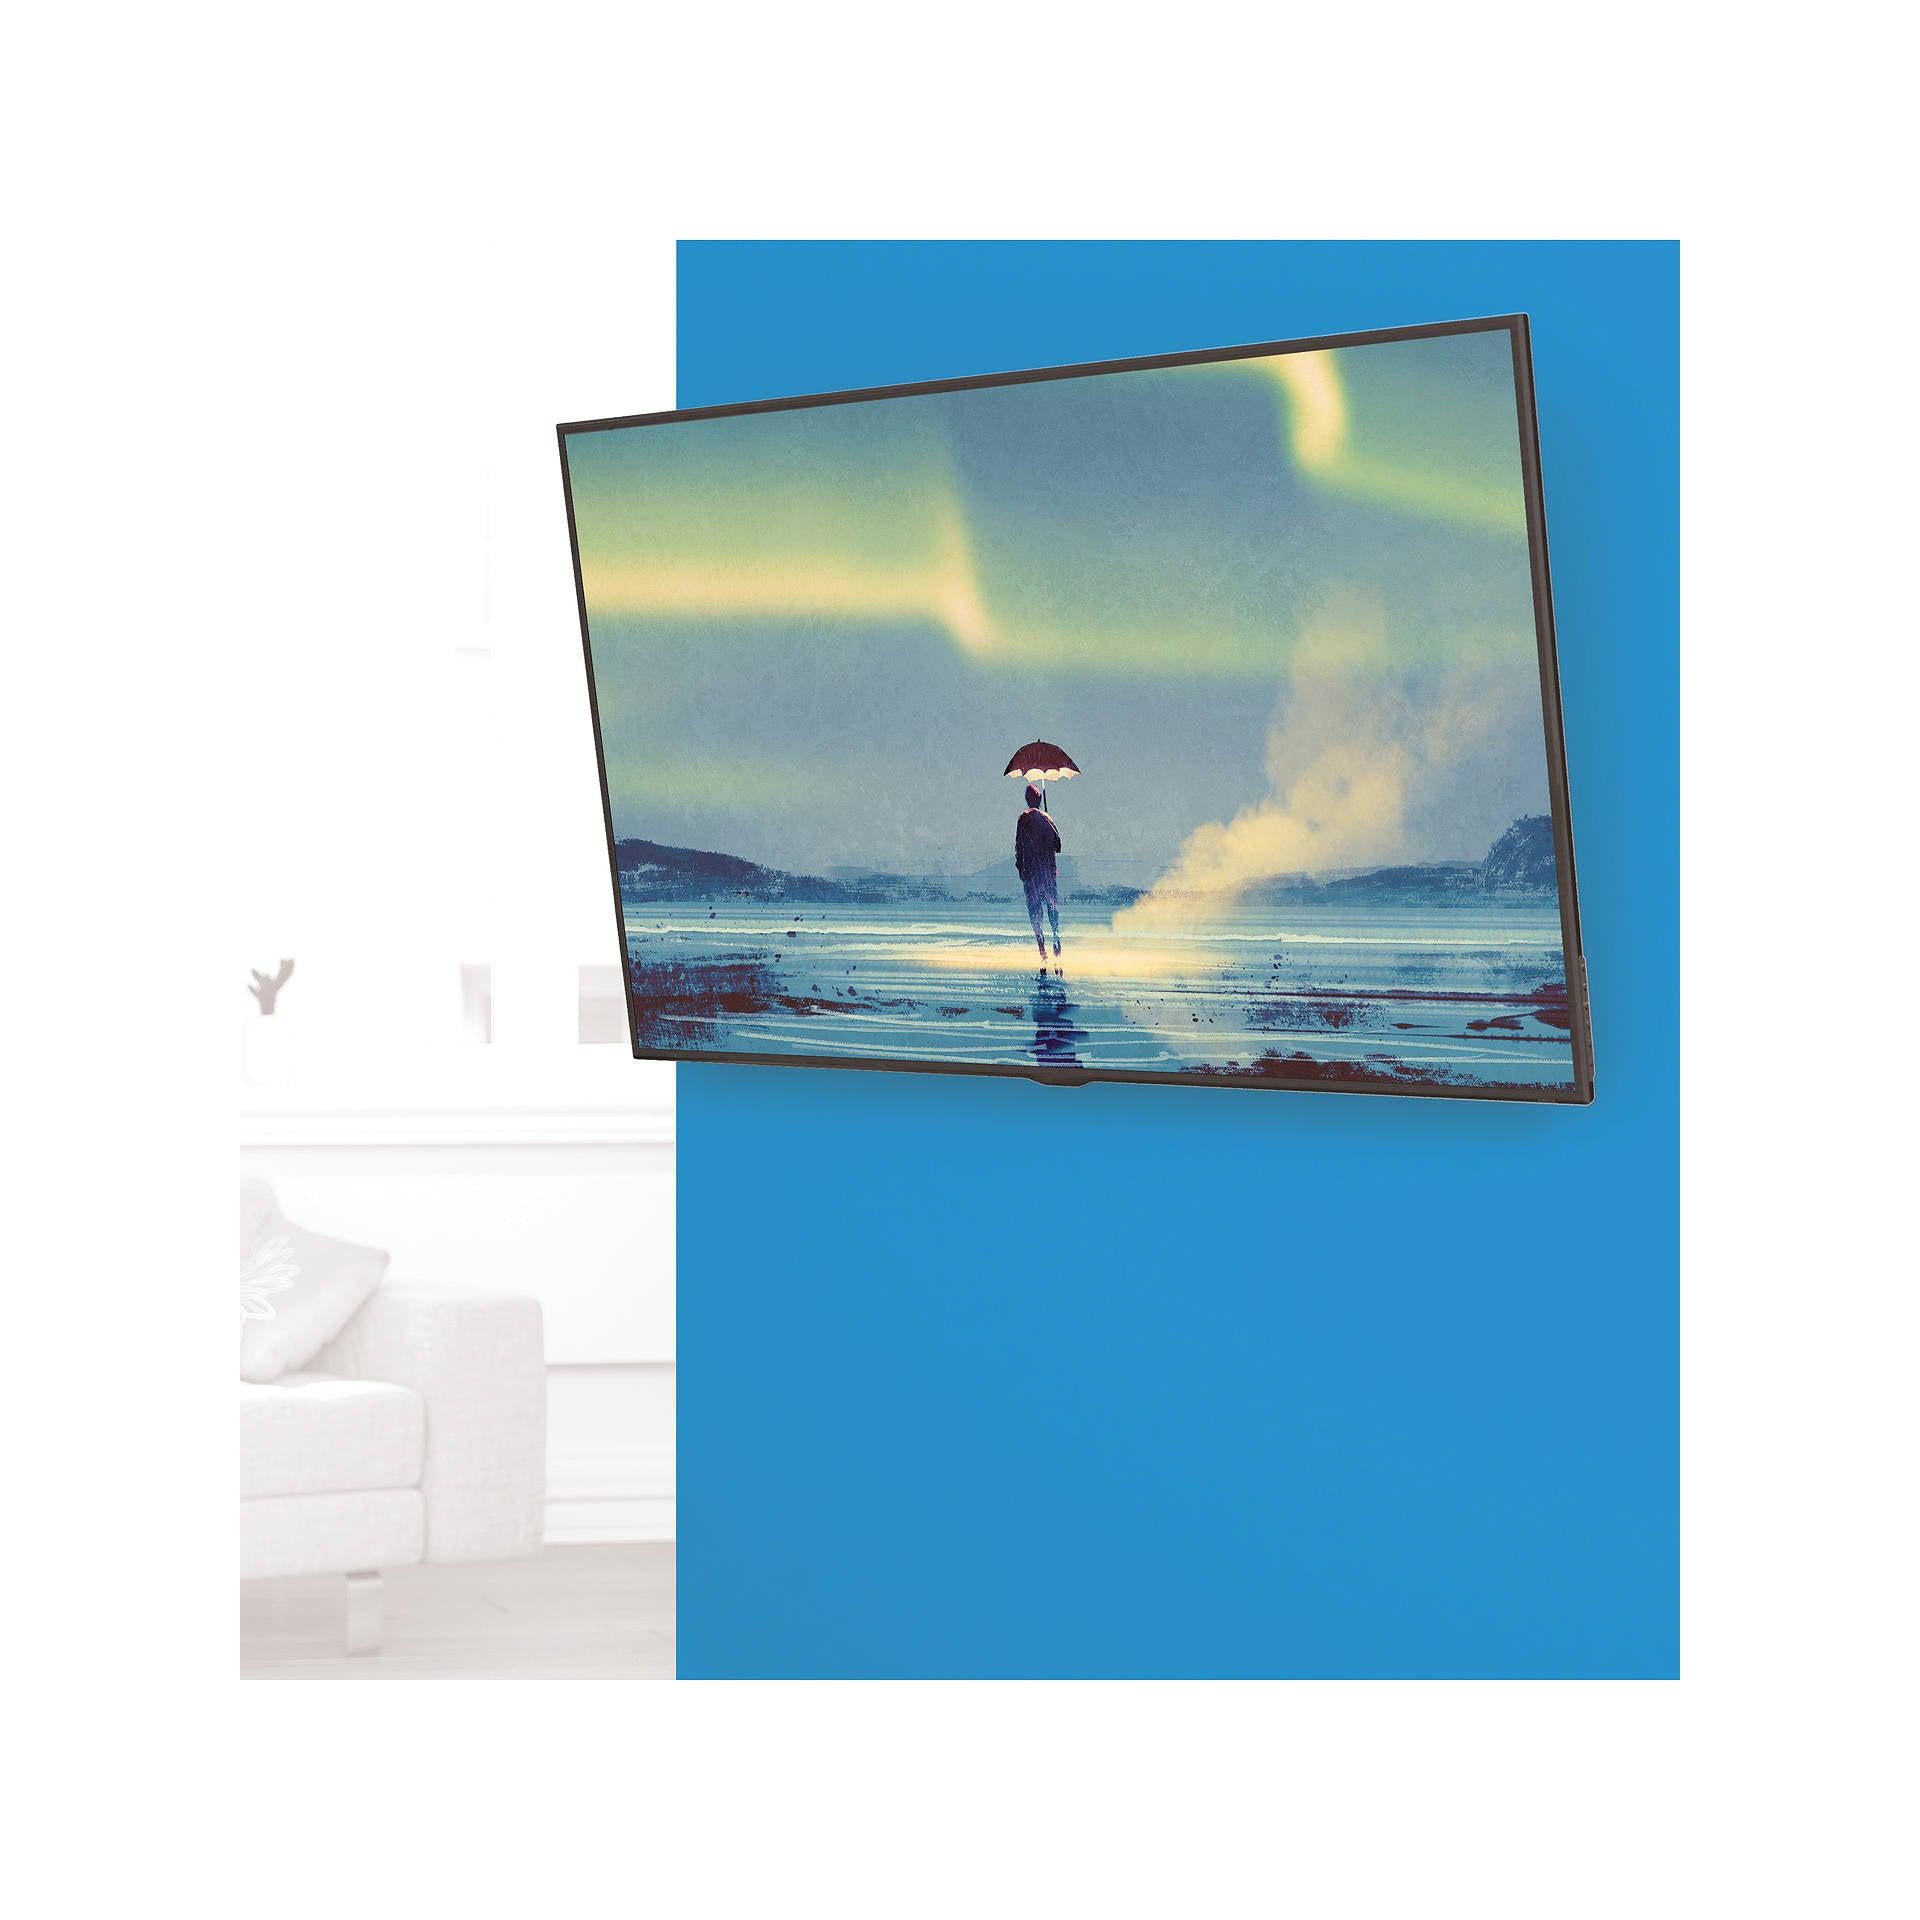 AVF Tilting TV Wall Bracket for TVs from 37” to 80” JML8451 - White